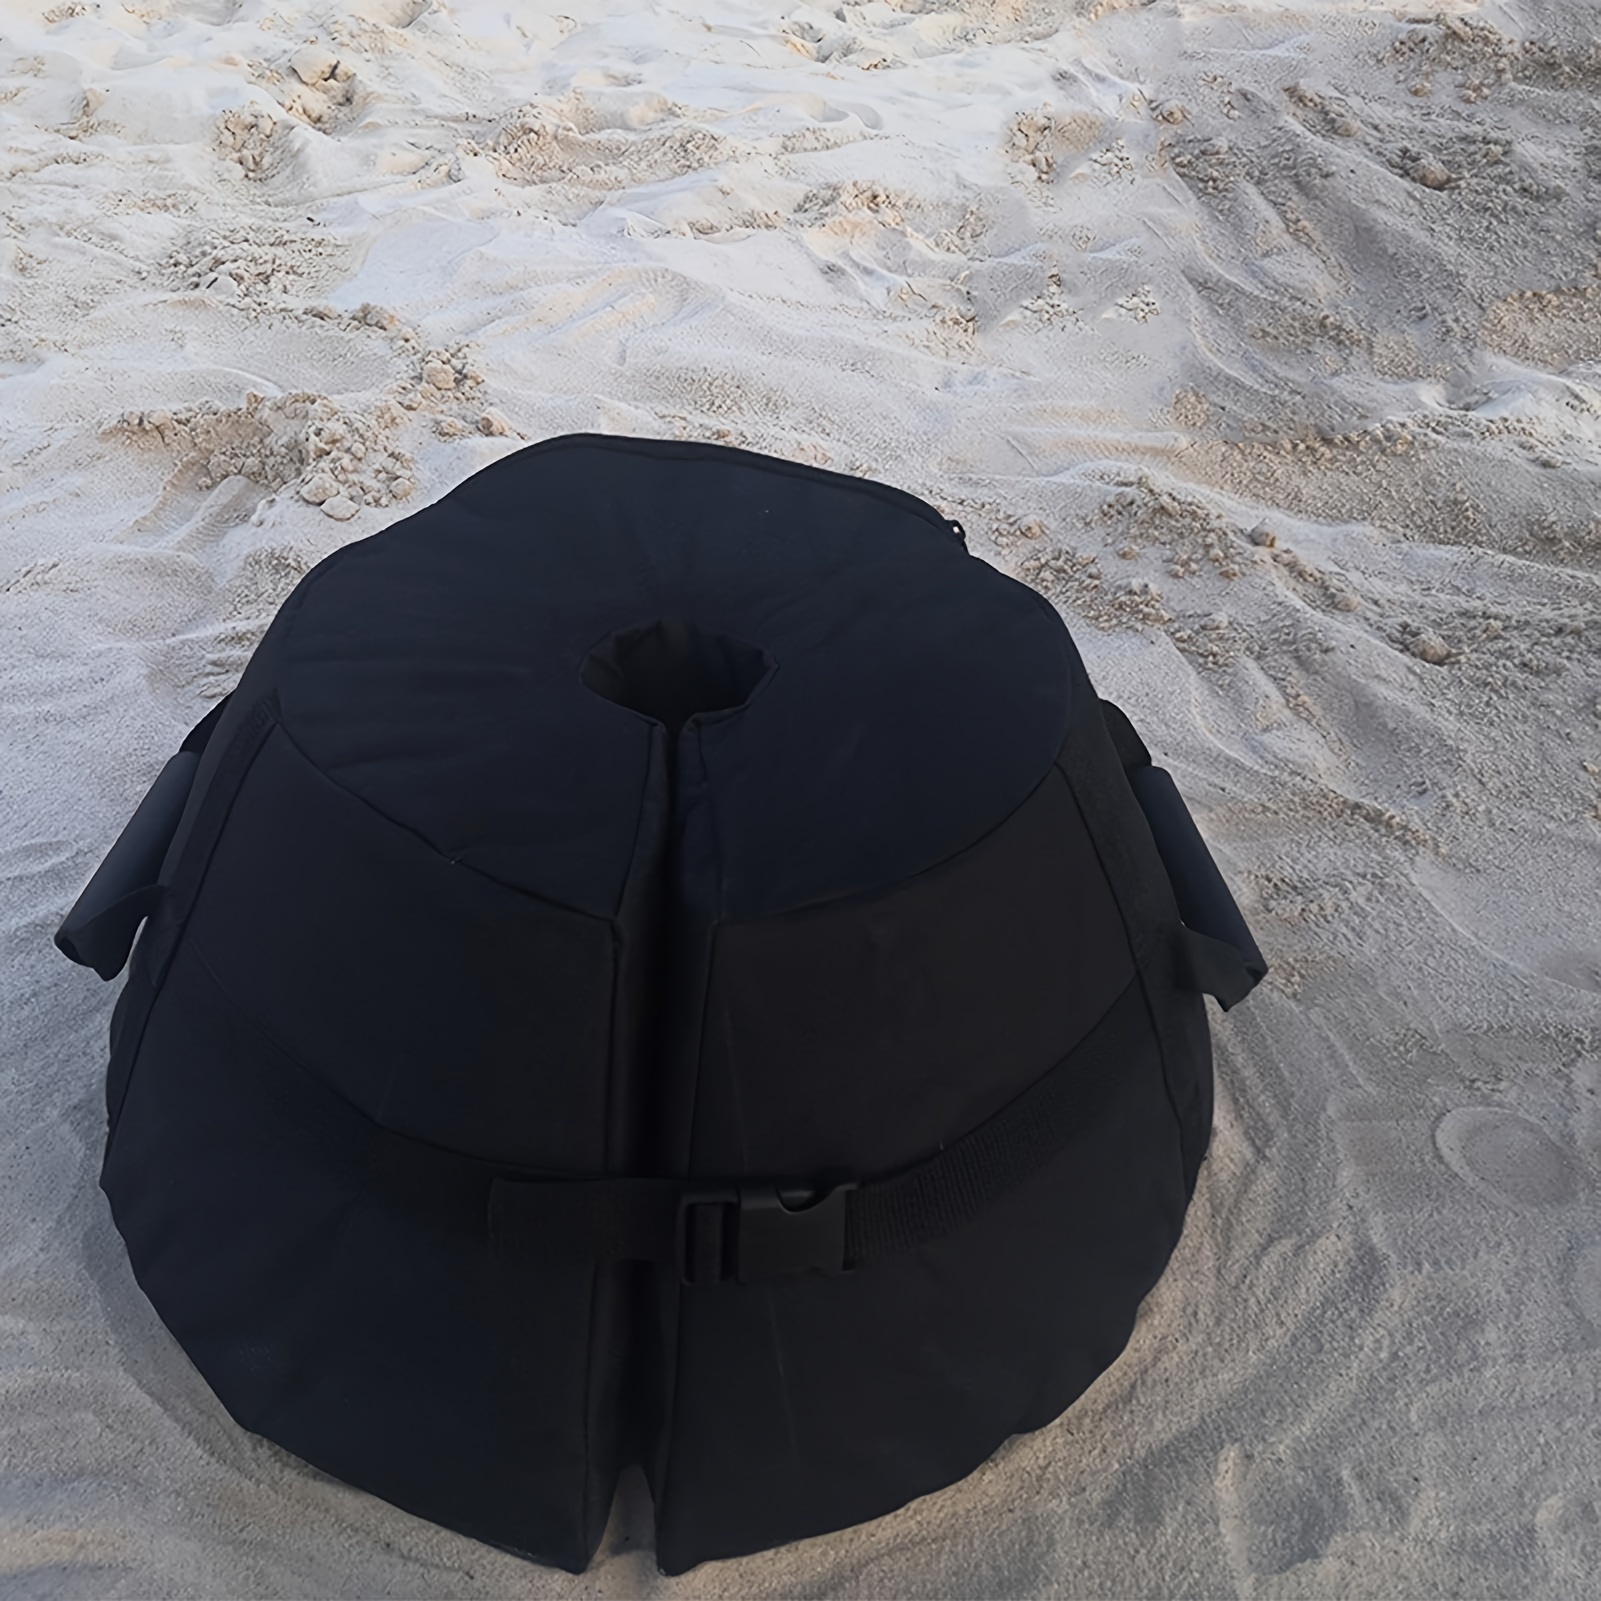 1pc ビーチ旅行用ウェイトベースサンドバッグ、屋外傘テント固定アンカーサンドバッグ、600D PVCコーティングオックスフォードファブリック、ブラック